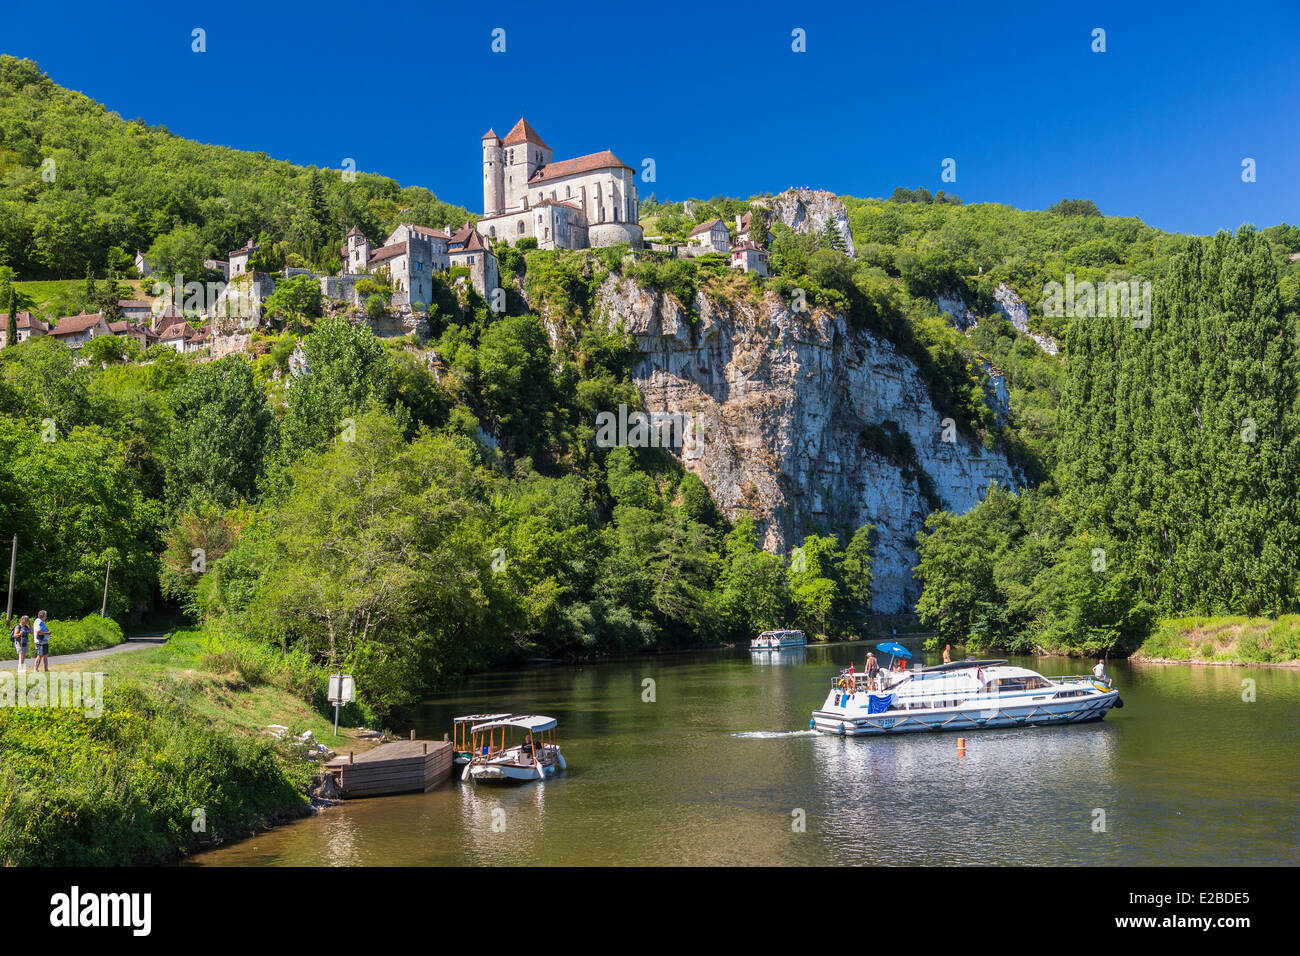 Francia, Lot, Saint Cirq Lapopie, etichettati i più bei villaggi di Francia, turismo fluviale Foto Stock